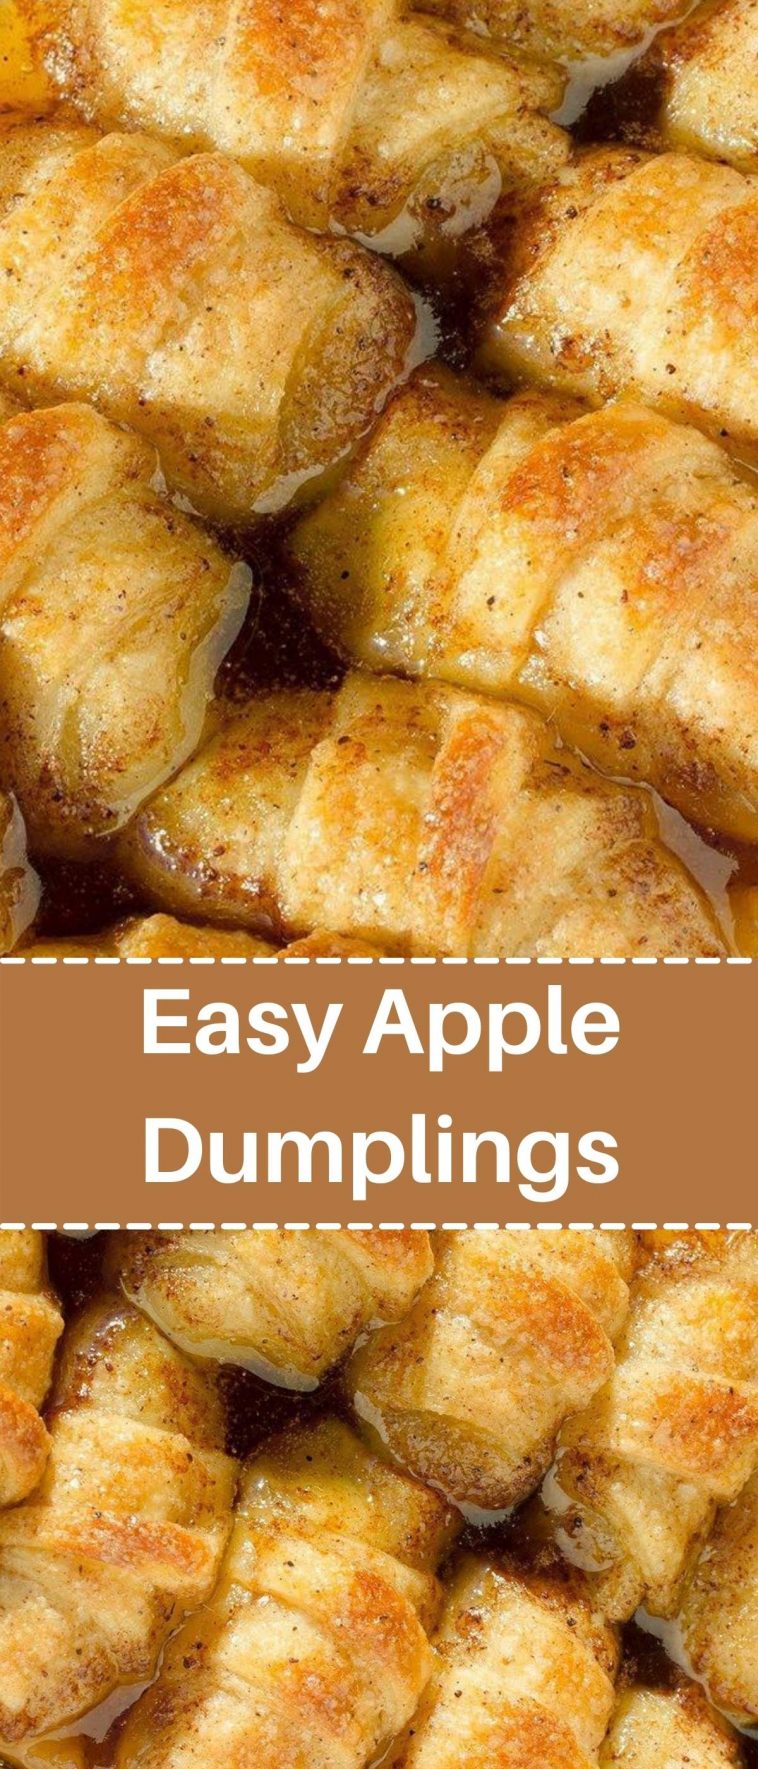 Easy Apple Dumplings